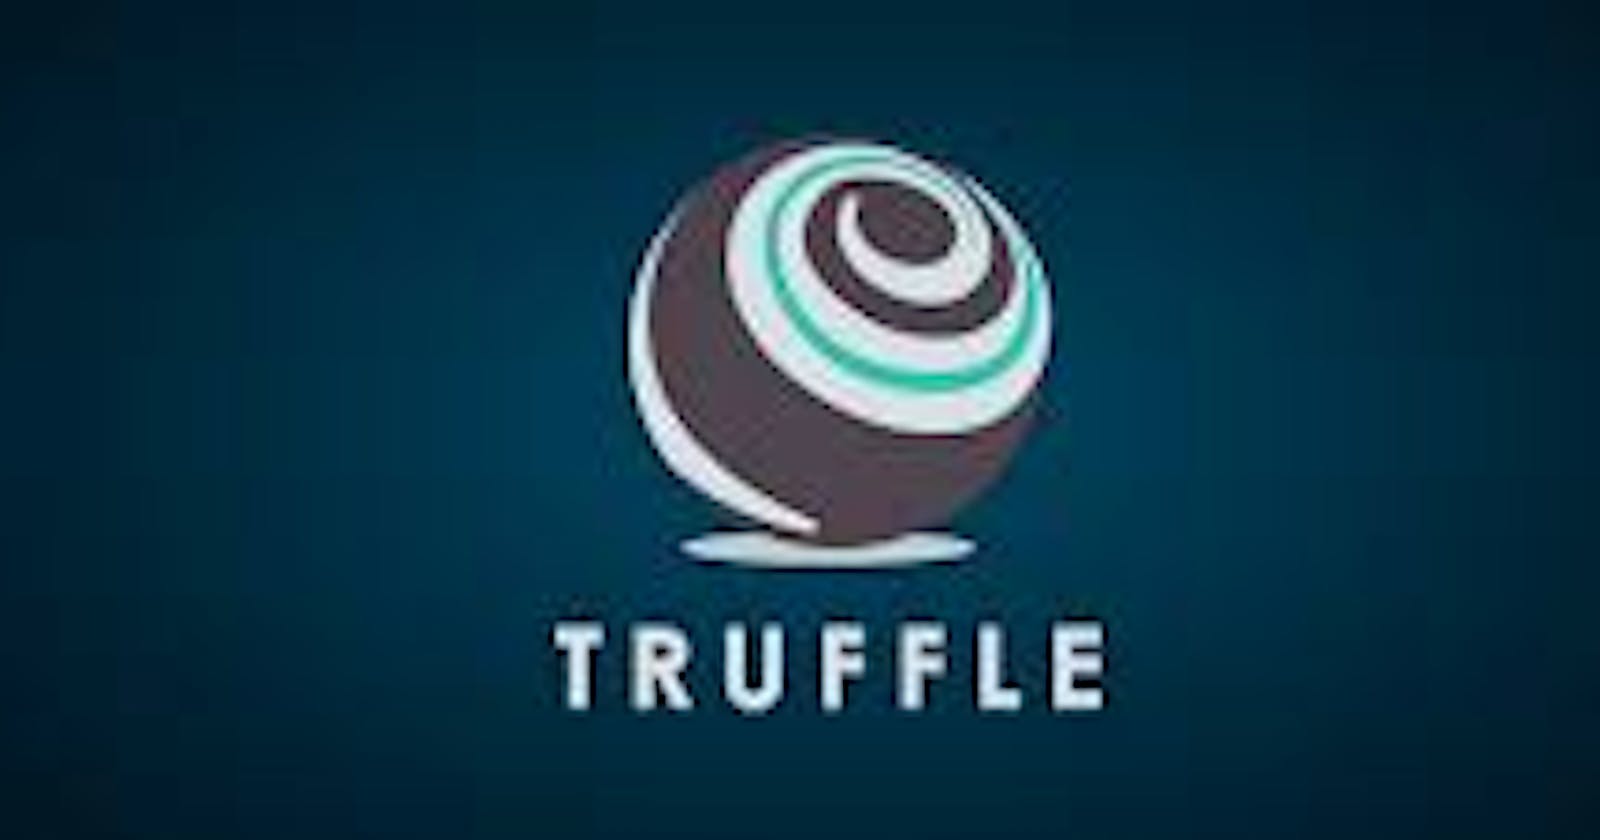 Truffle for Blockchain developer